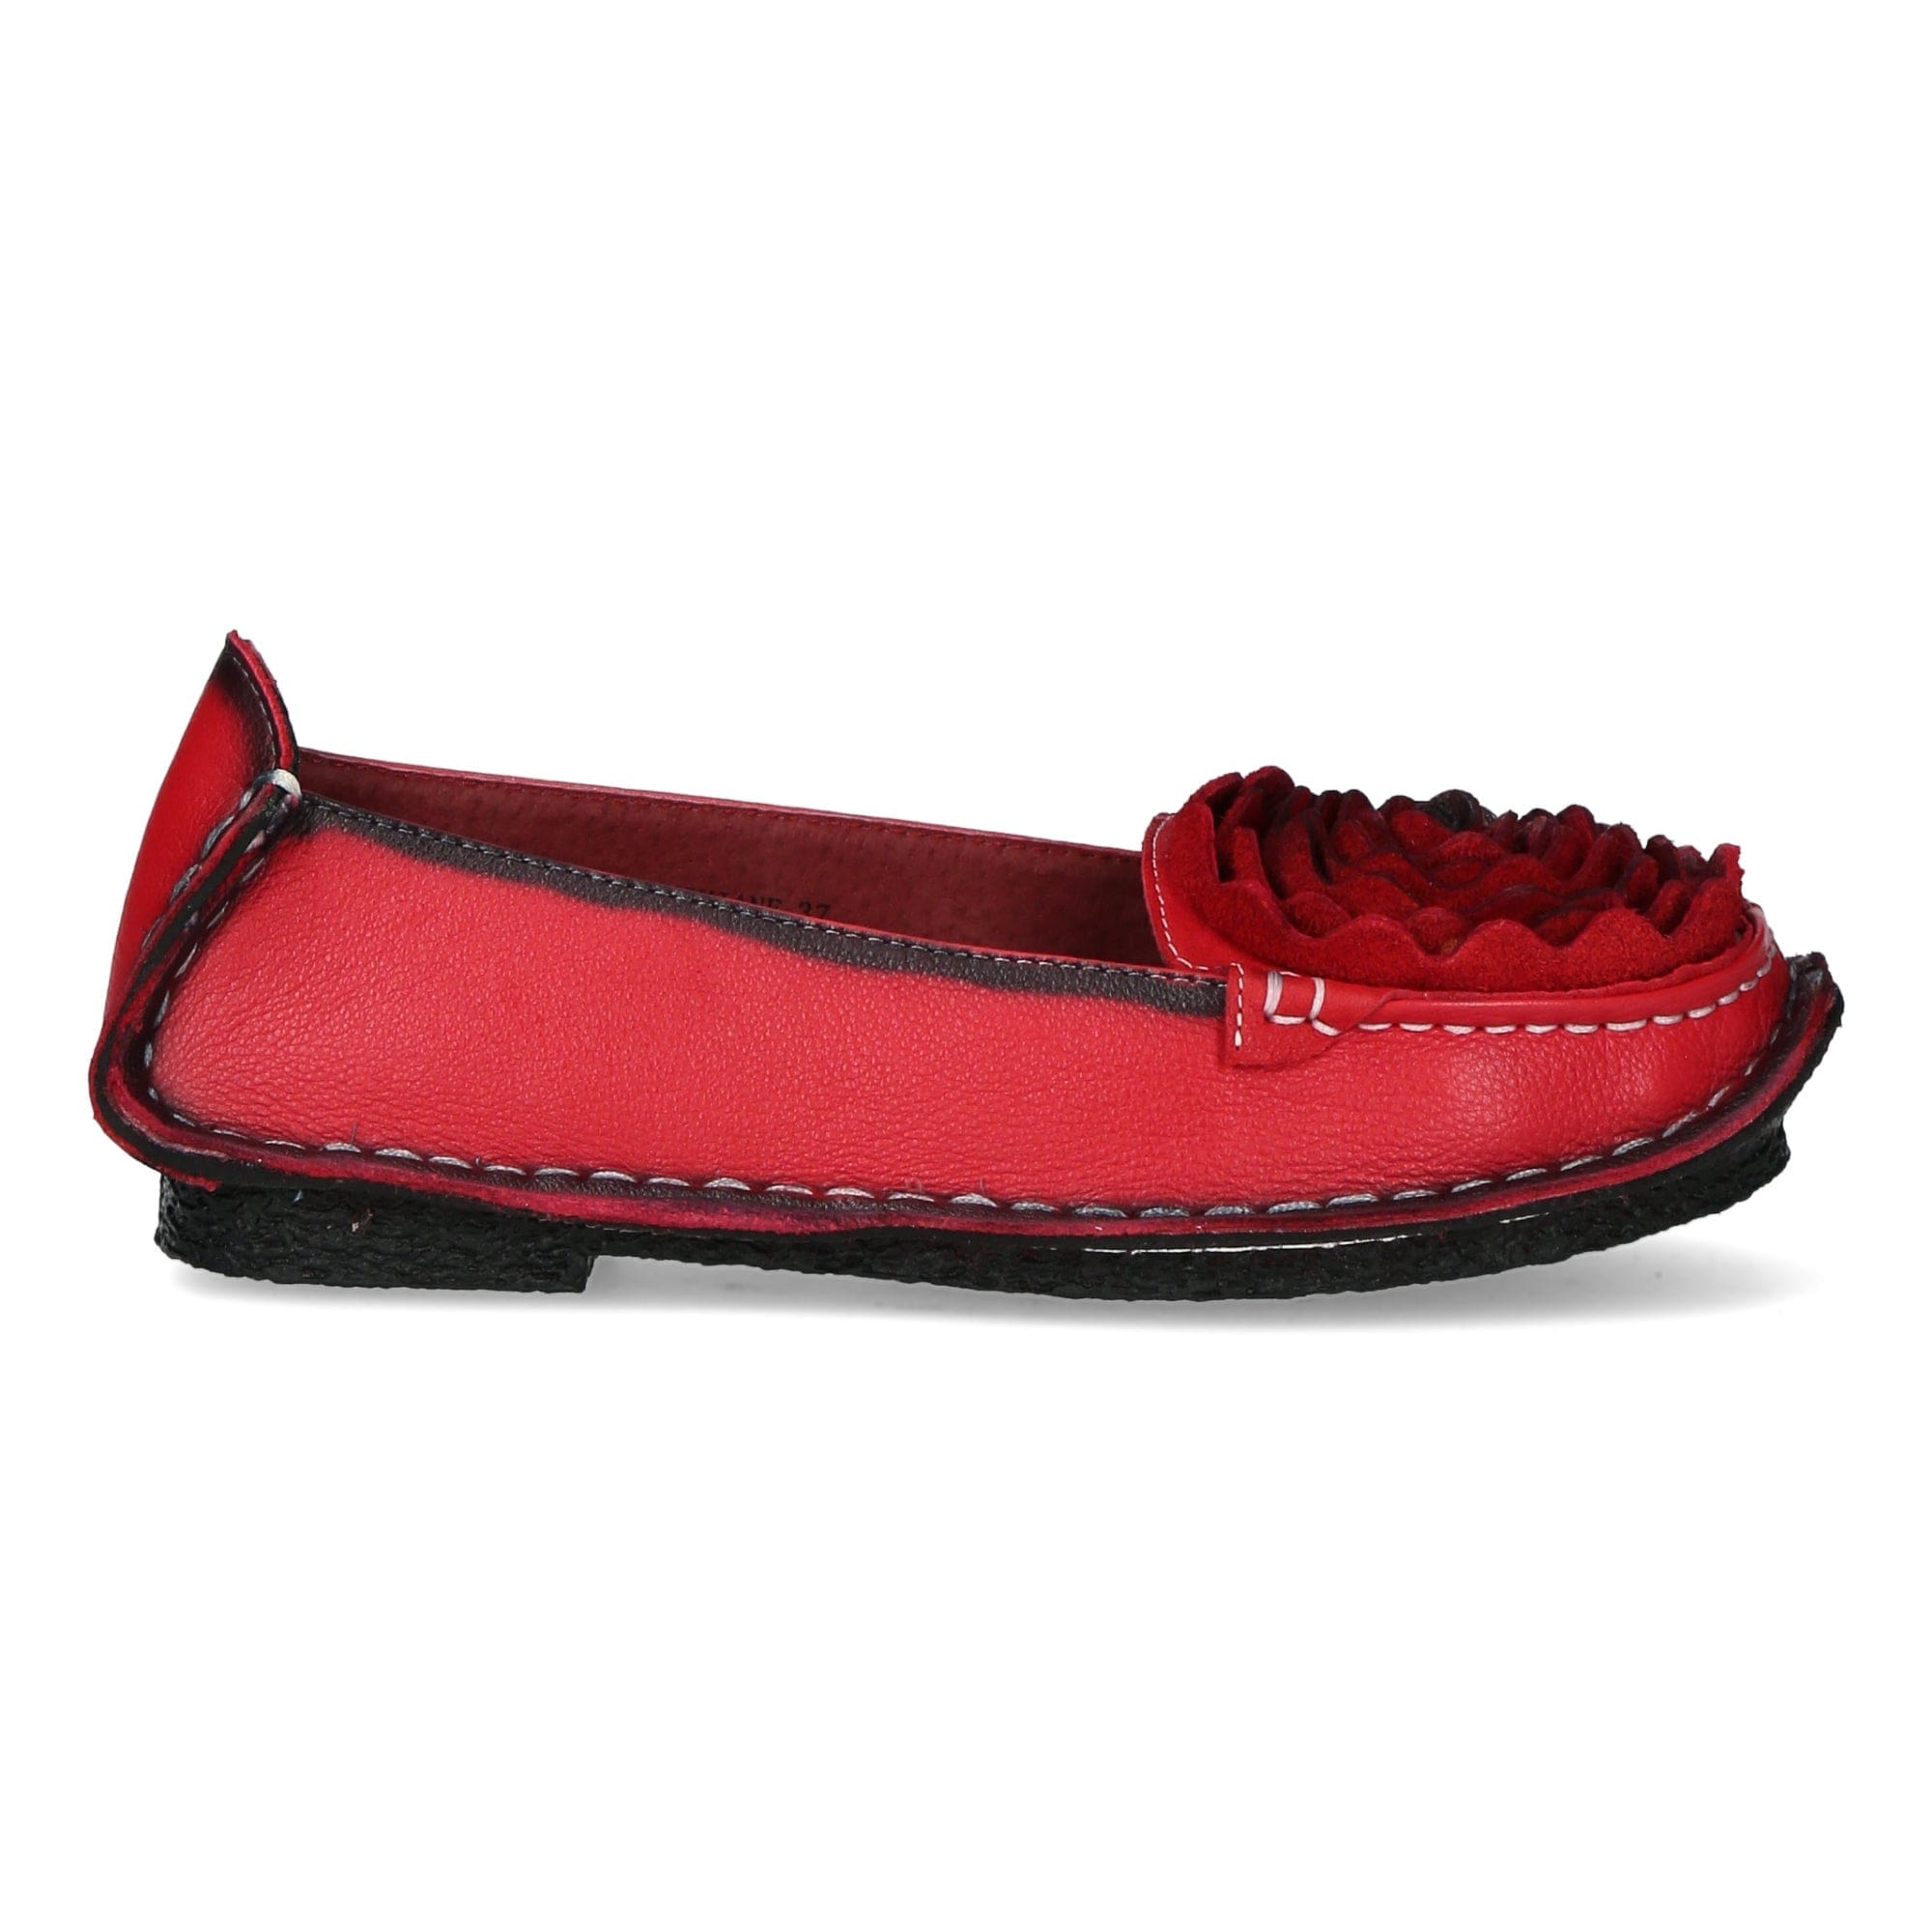 Zapatos Viviane - 35 / Rojo - Mocasín